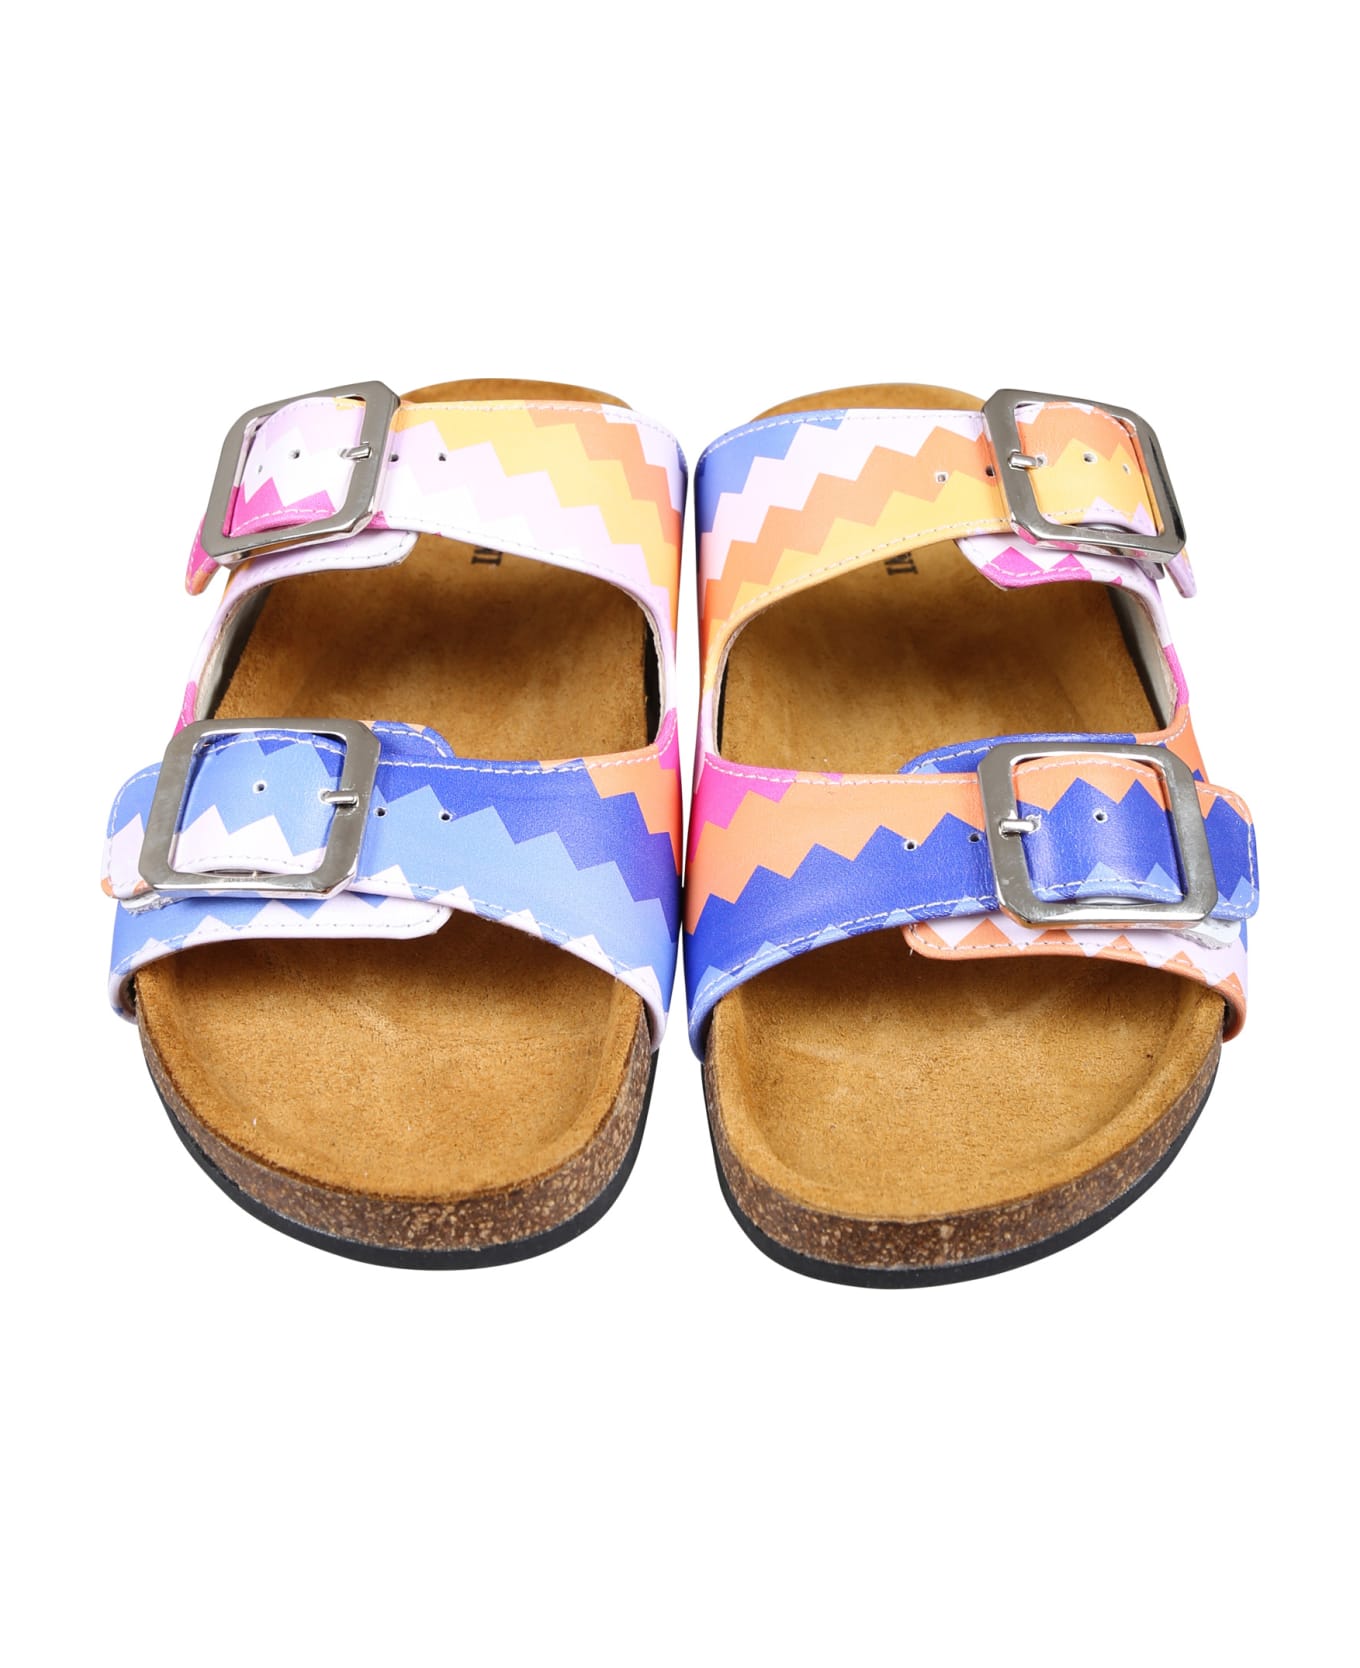 Missoni Multicolor Sandals For Girl - Multicolor シューズ